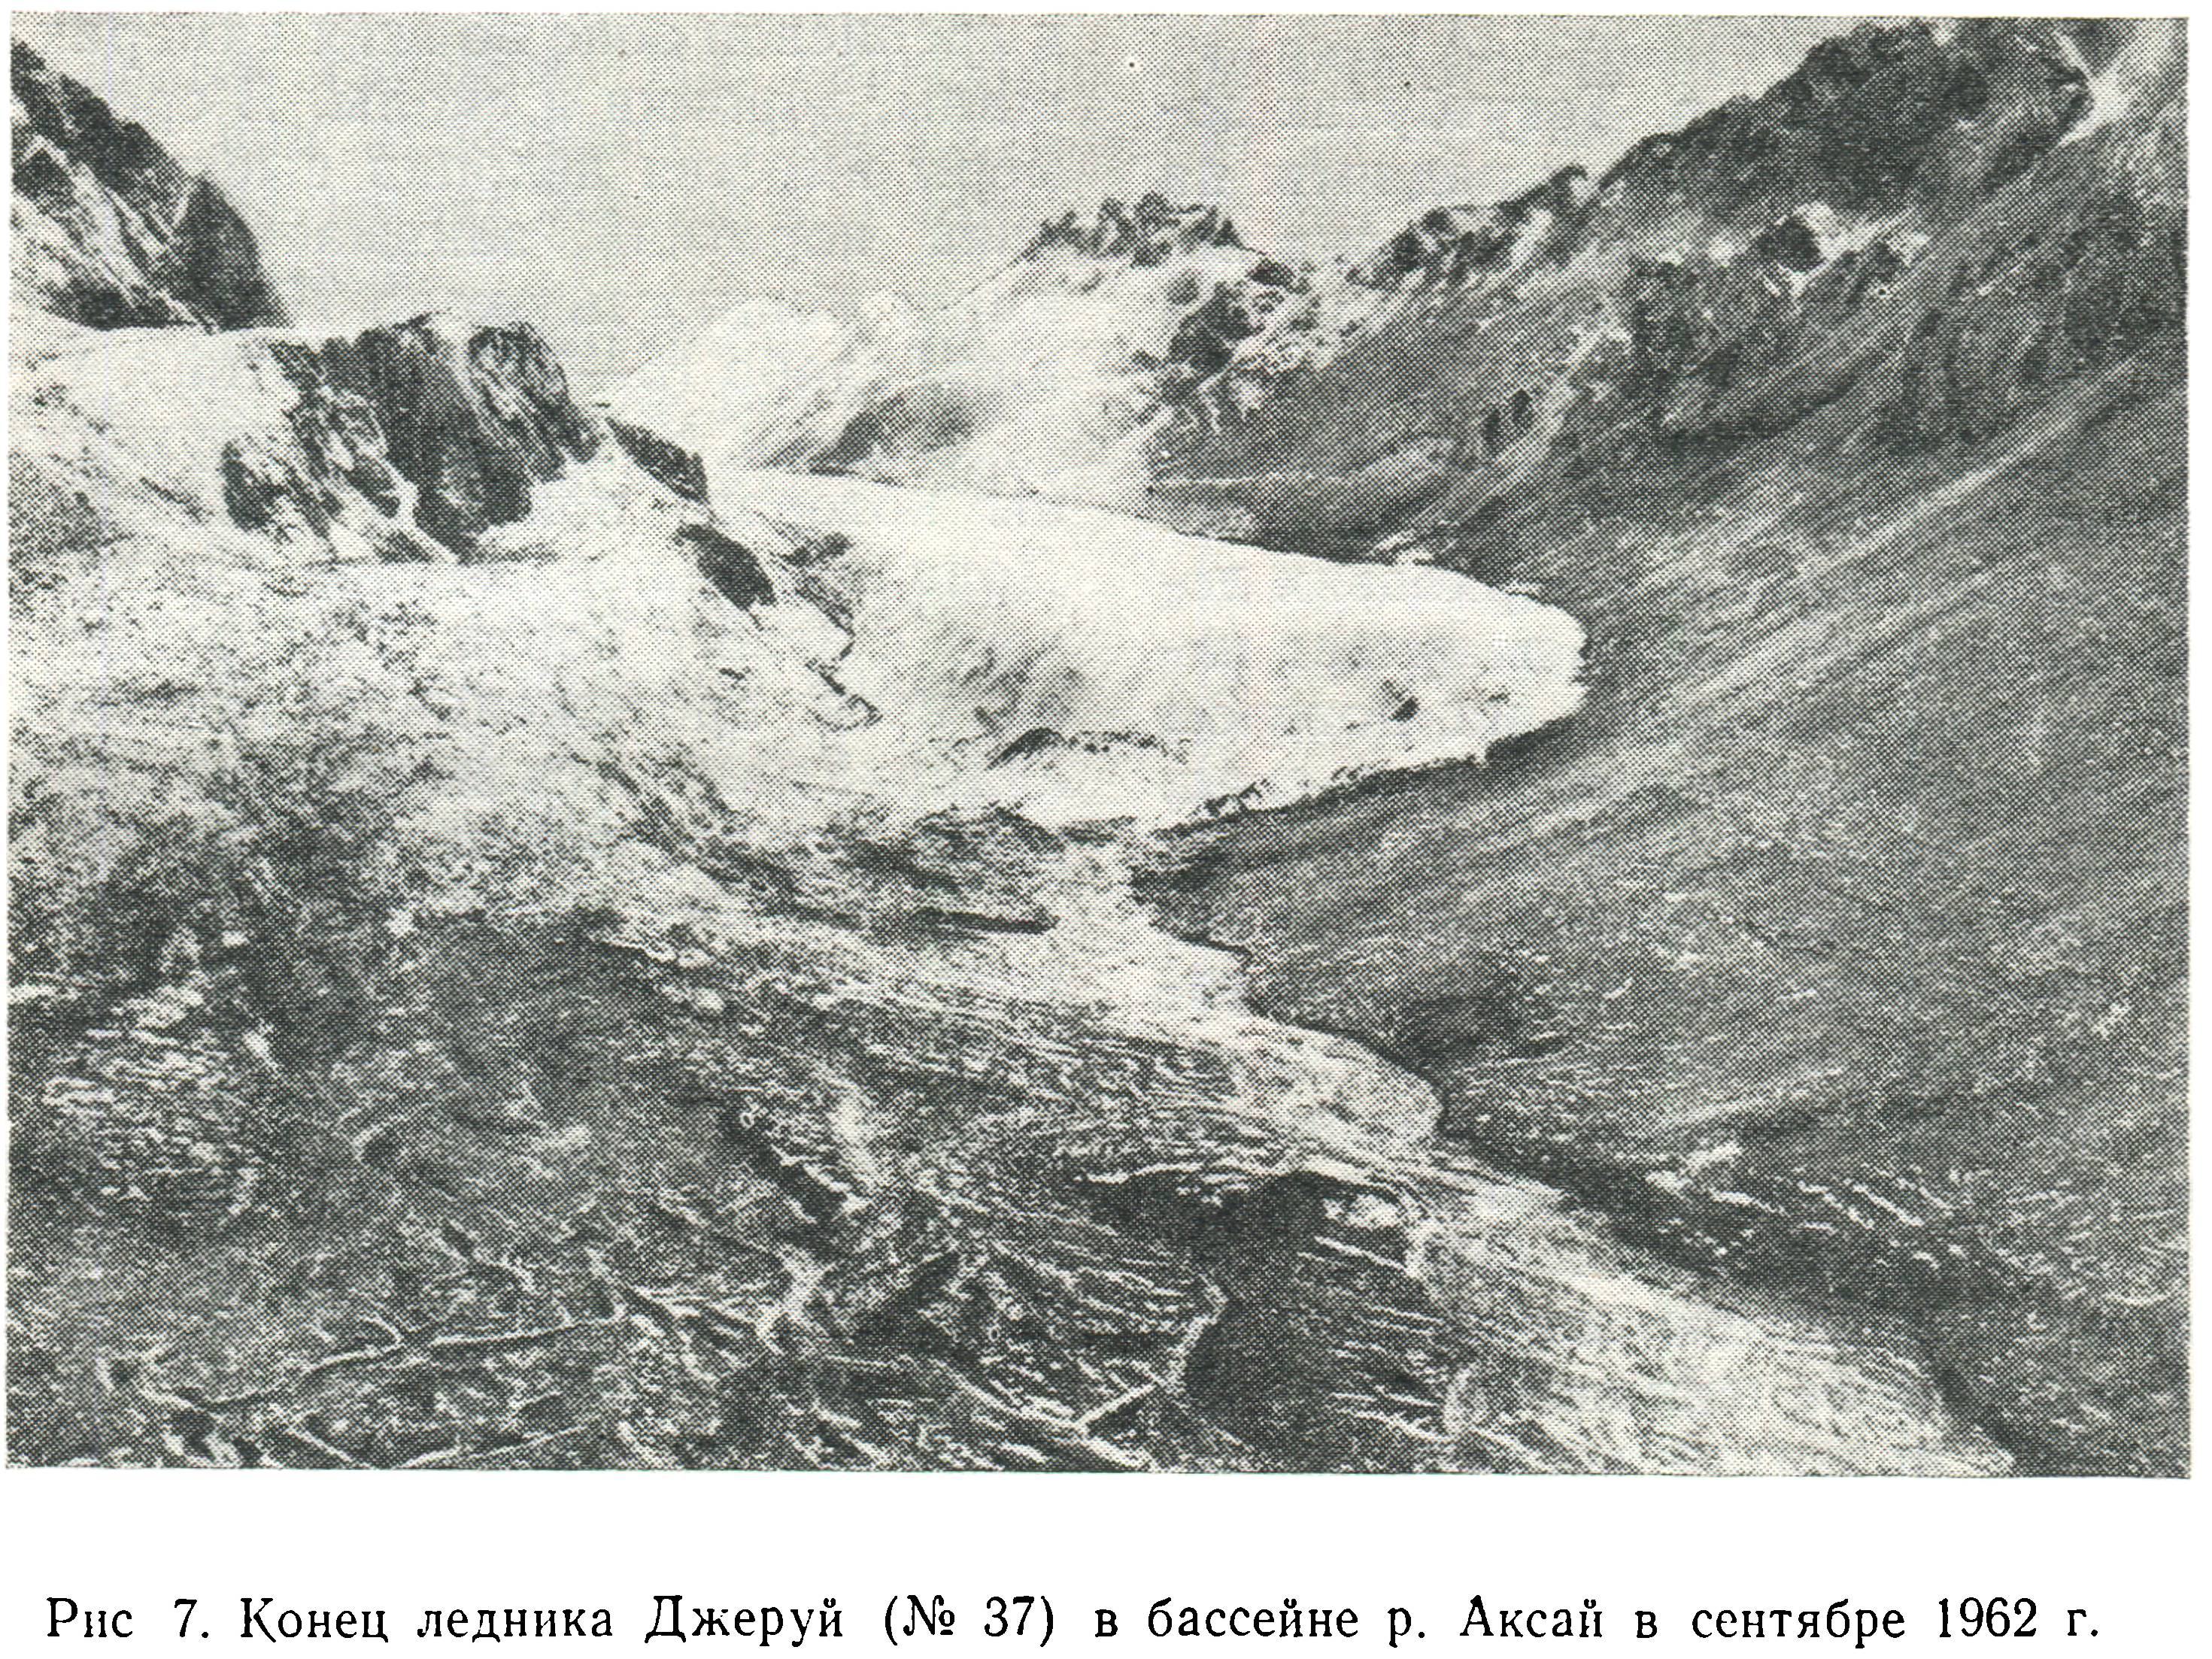 Язык ледника Джеруй. На заднем плане, видимо, седловина перевала Чертов Клык. Фото из каталога ледников СССР, 1962 г.